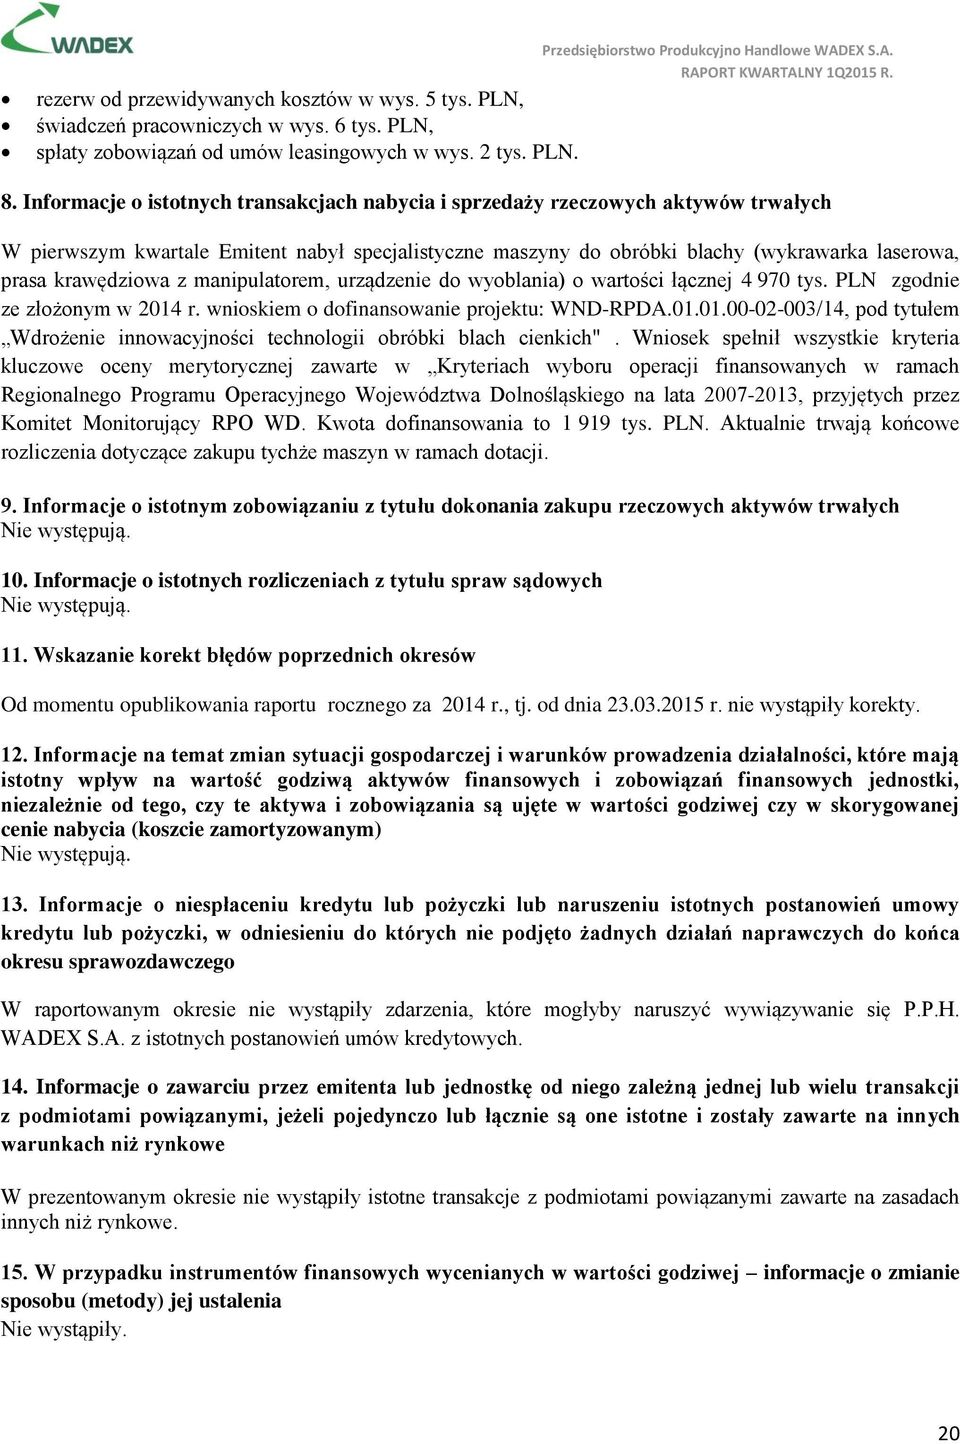 krawędziowa z manipulatorem, urządzenie do wyoblania) o wartości łącznej 4 970 tys. PLN zgodnie ze złożonym w 2014